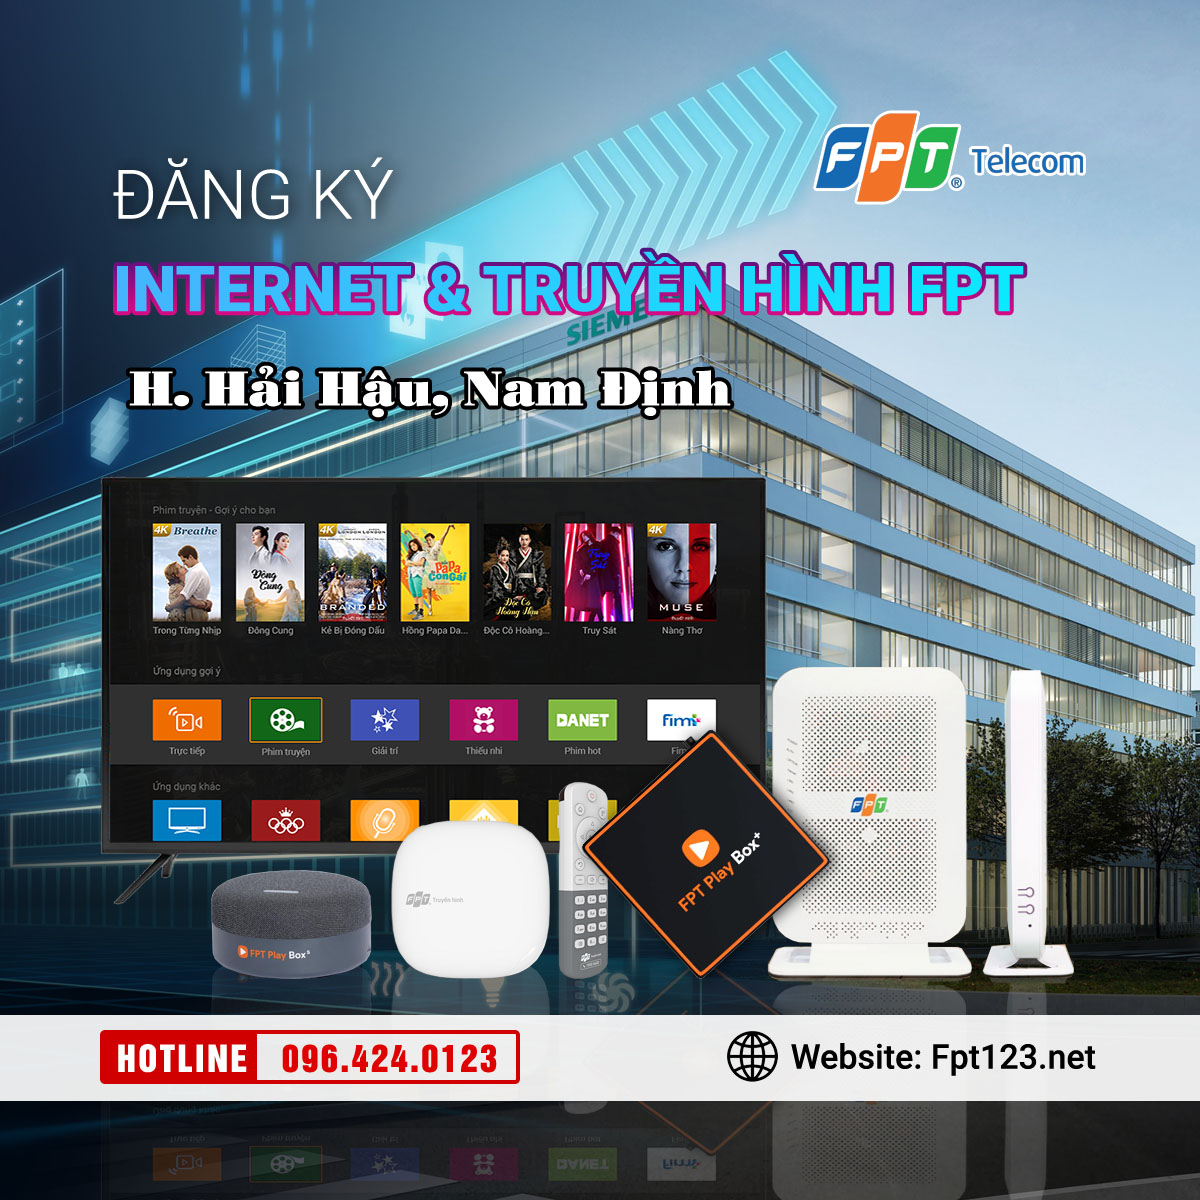 Đăng ký internet và truyền hình FPT Hải Hậu, Nam Định